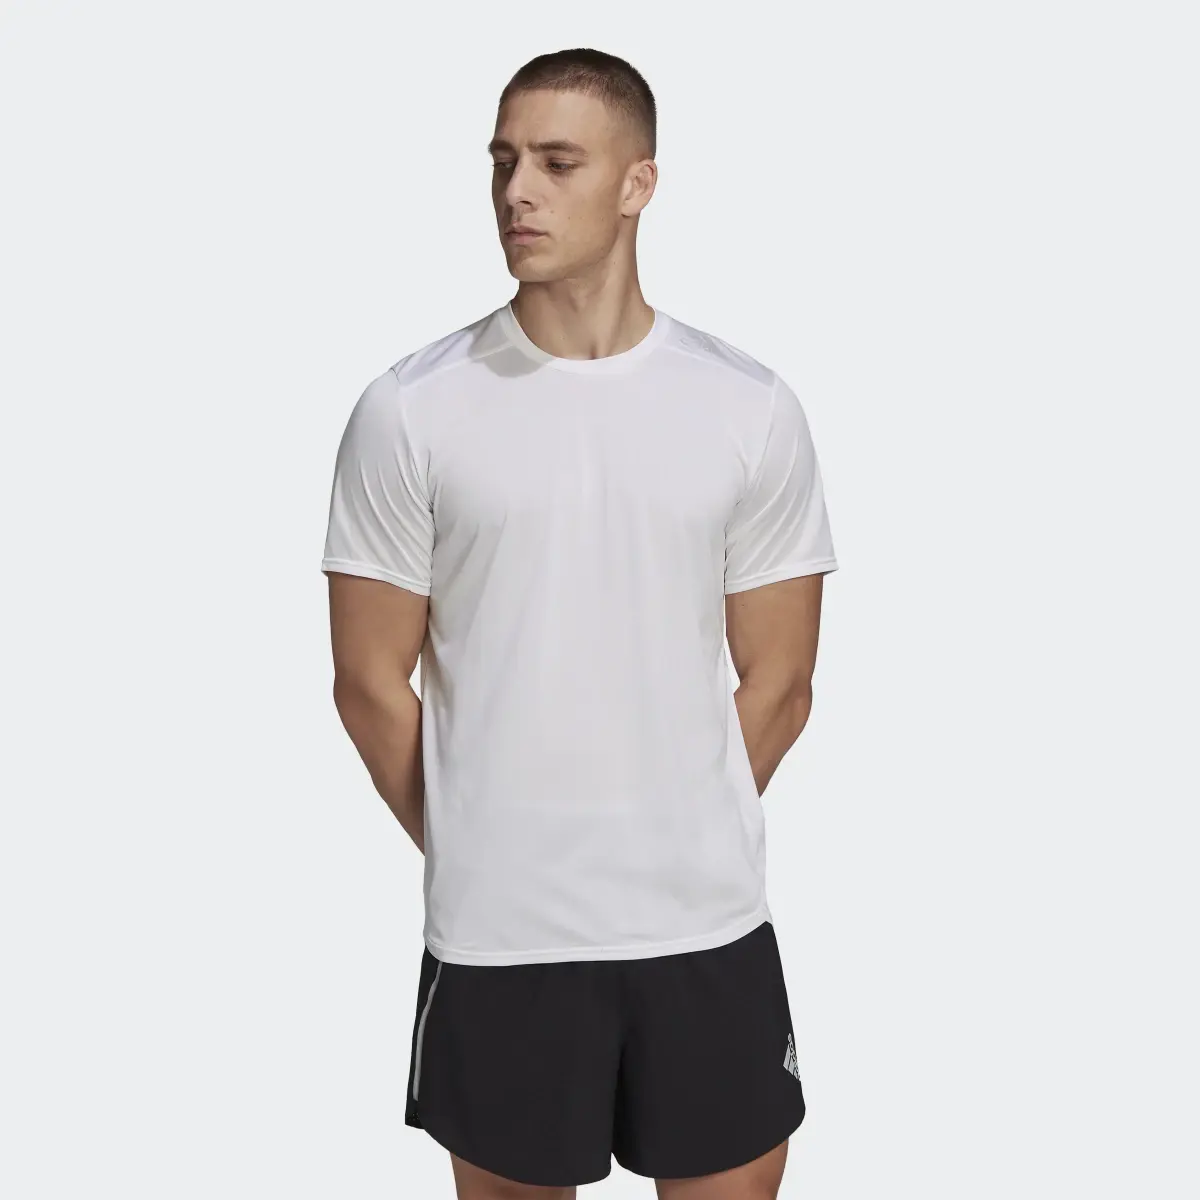 Adidas Designed 4 Running Tişört. 2